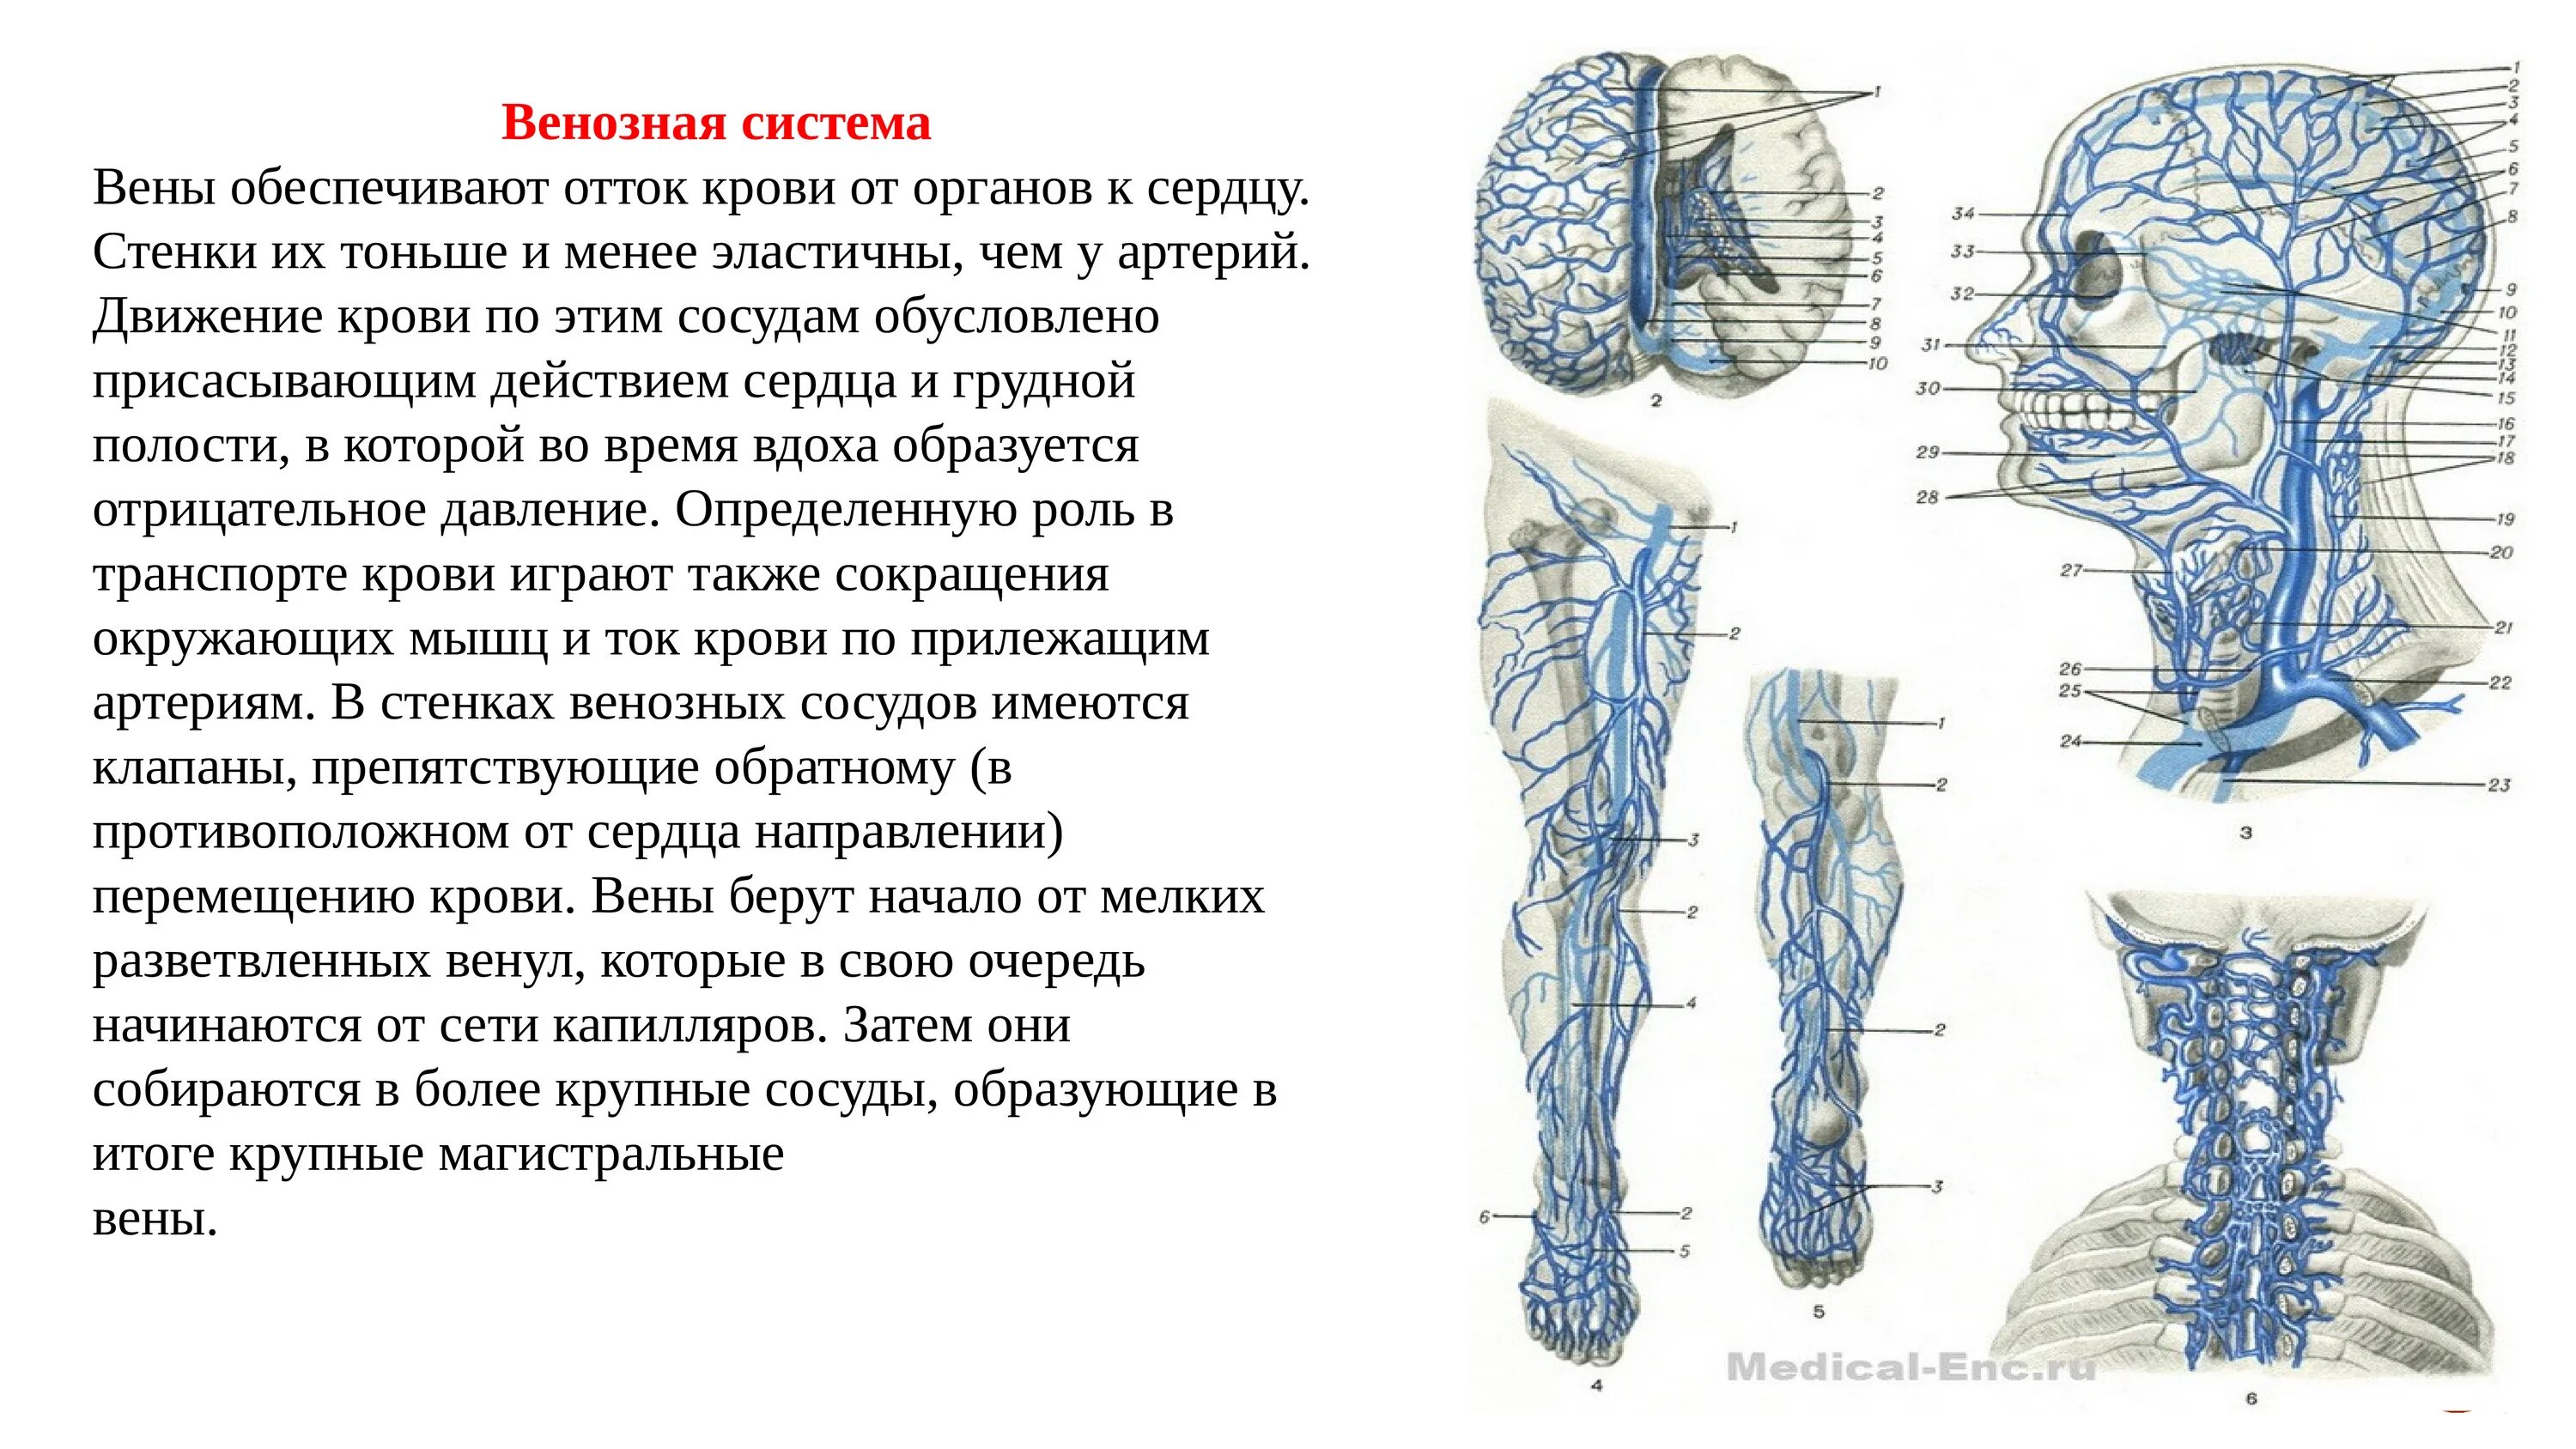 Название самой большой вены у человека. Принципы венозного оттока от органов и частей тела. Венозная система человека кратко. Схемы оттока венозной крови.